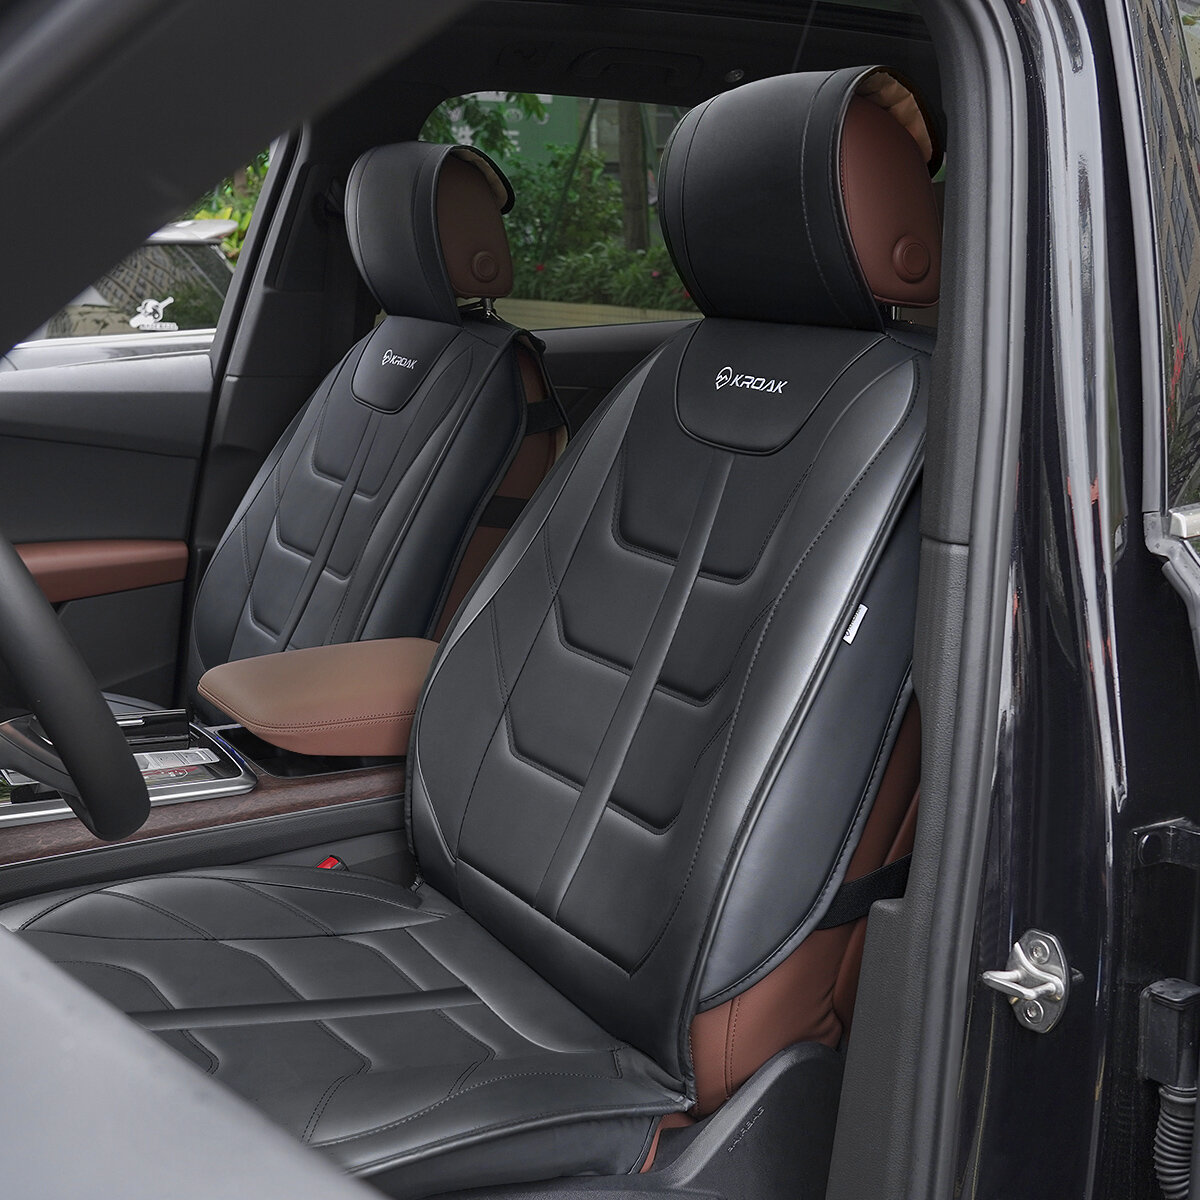 Στα 46.73 € από αποθήκη Κίνας | KROAK PU Nappa Leather Car Front Left Right Seat Cover Breathable Four Seasons Universal 2PC